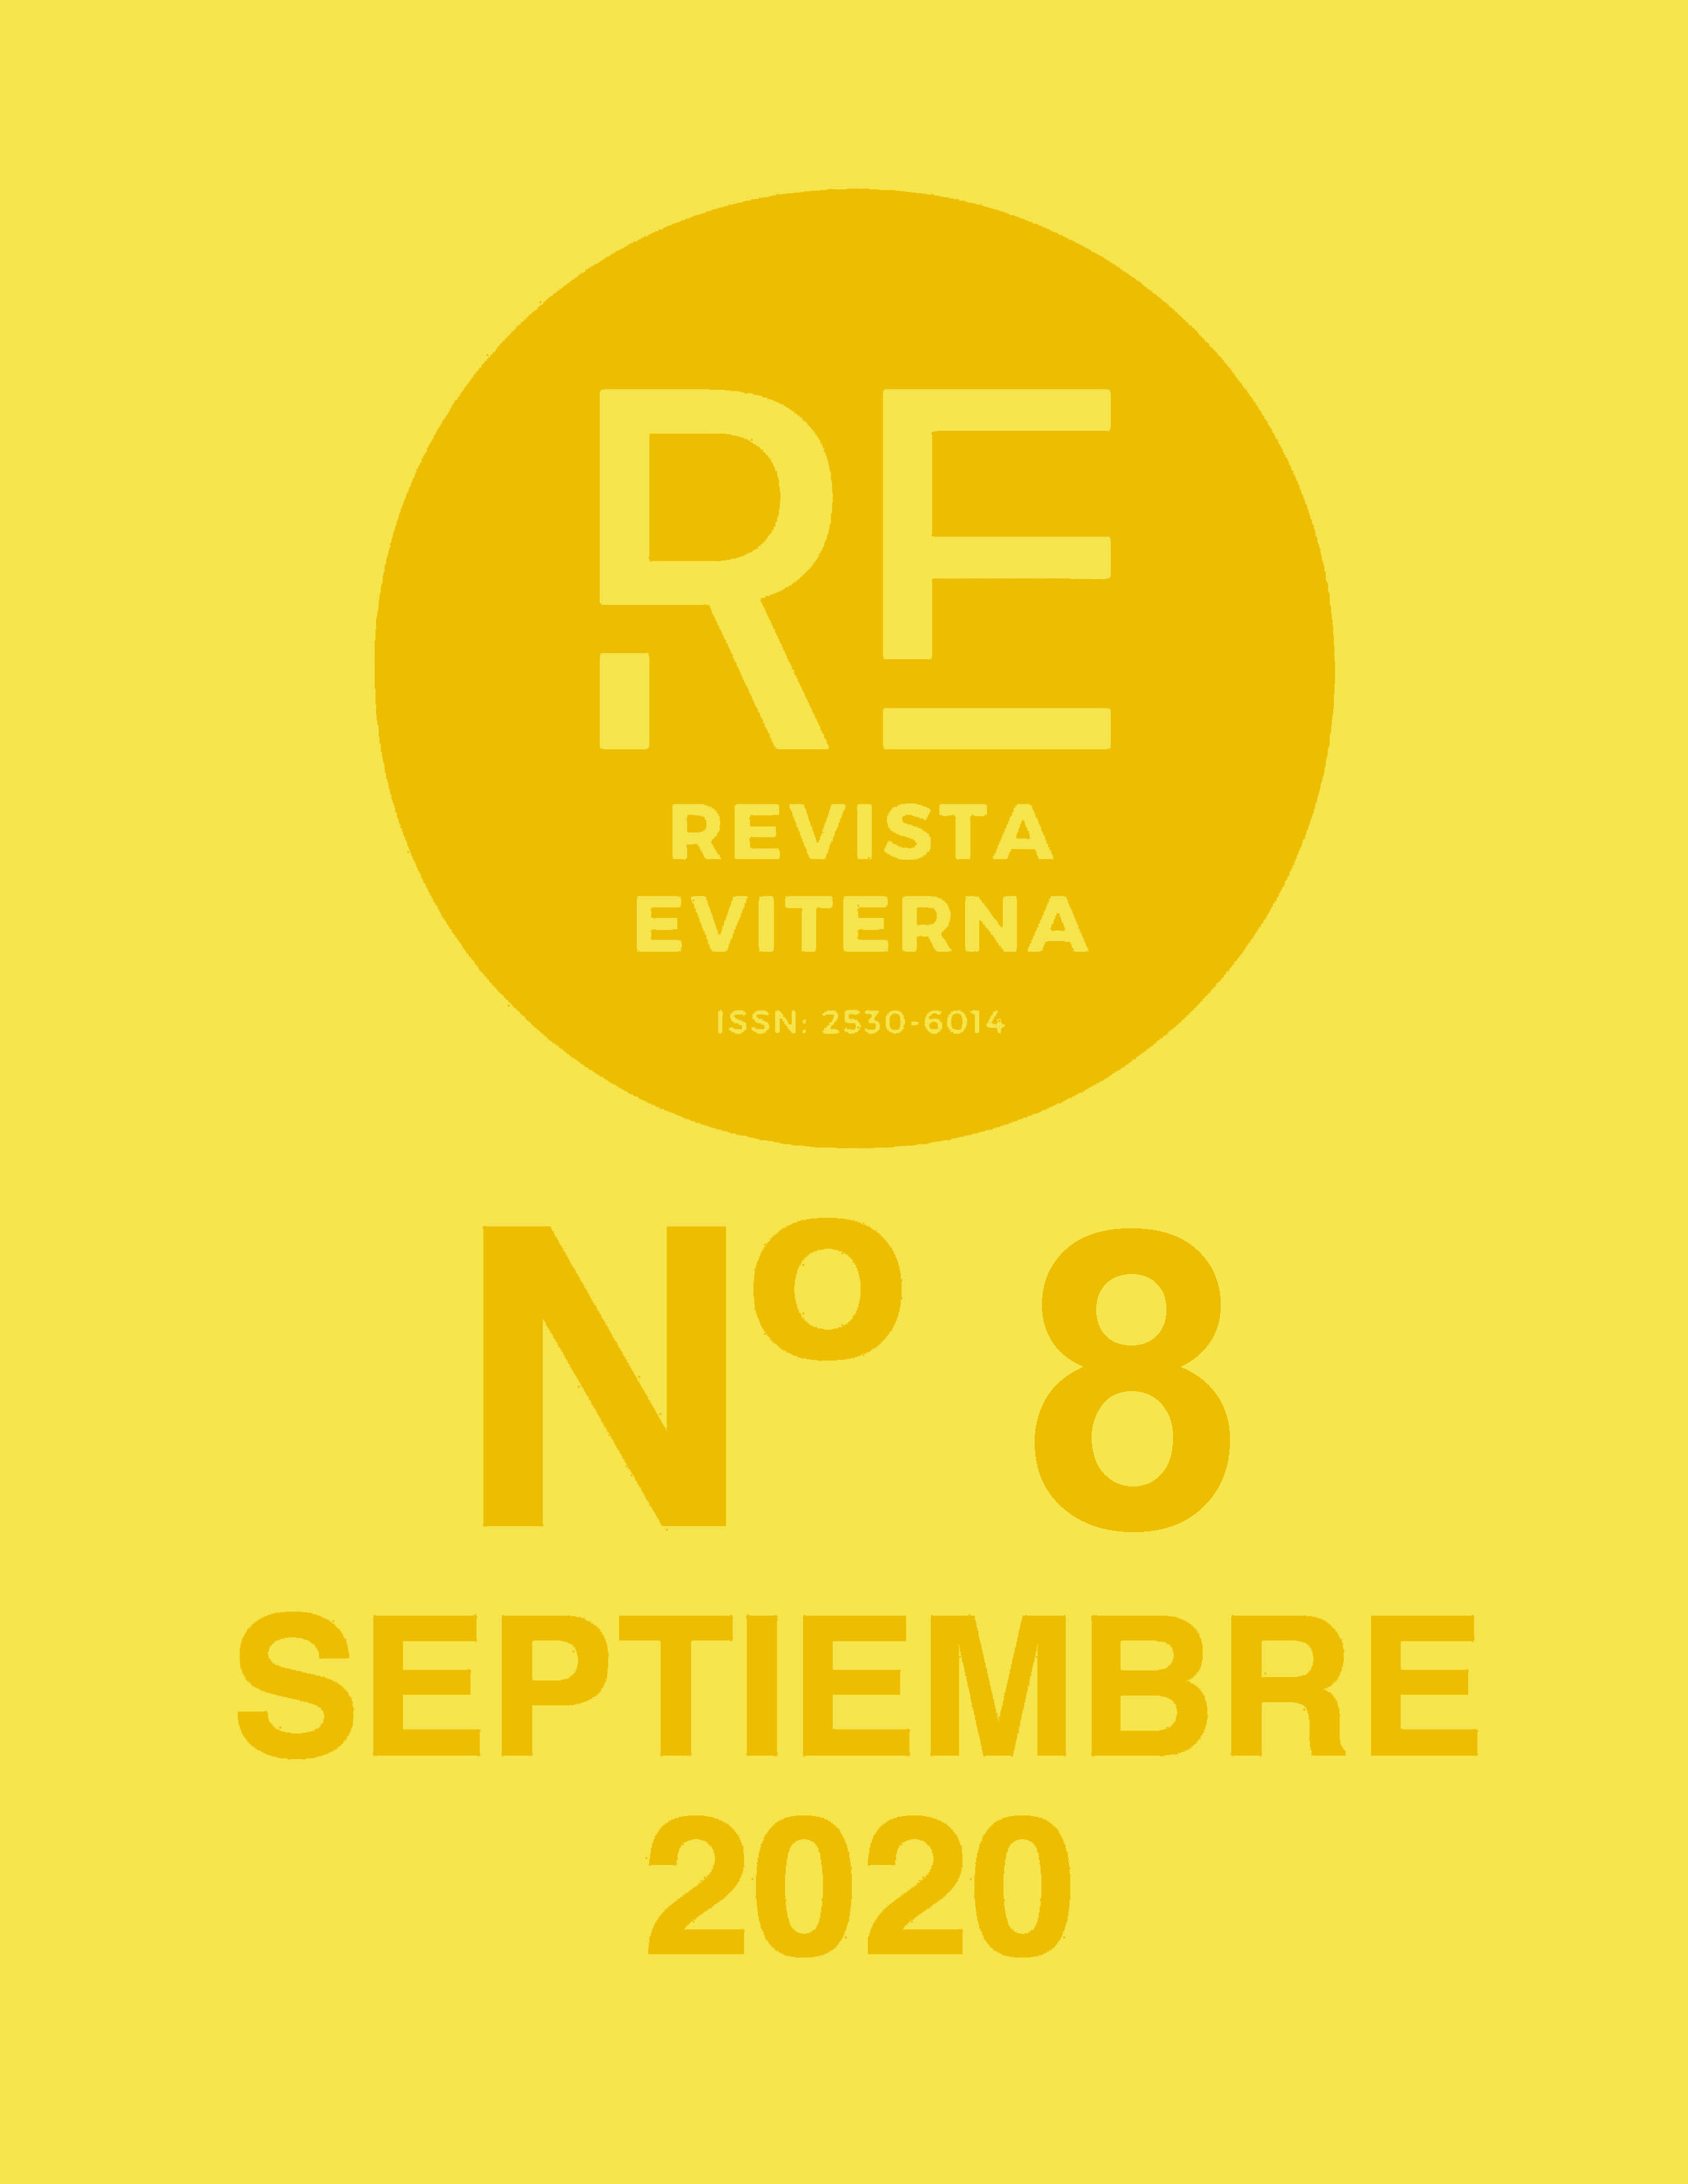 					View No. 8 (2020): Revista Eviterna nº 8, septiembre 2020
				